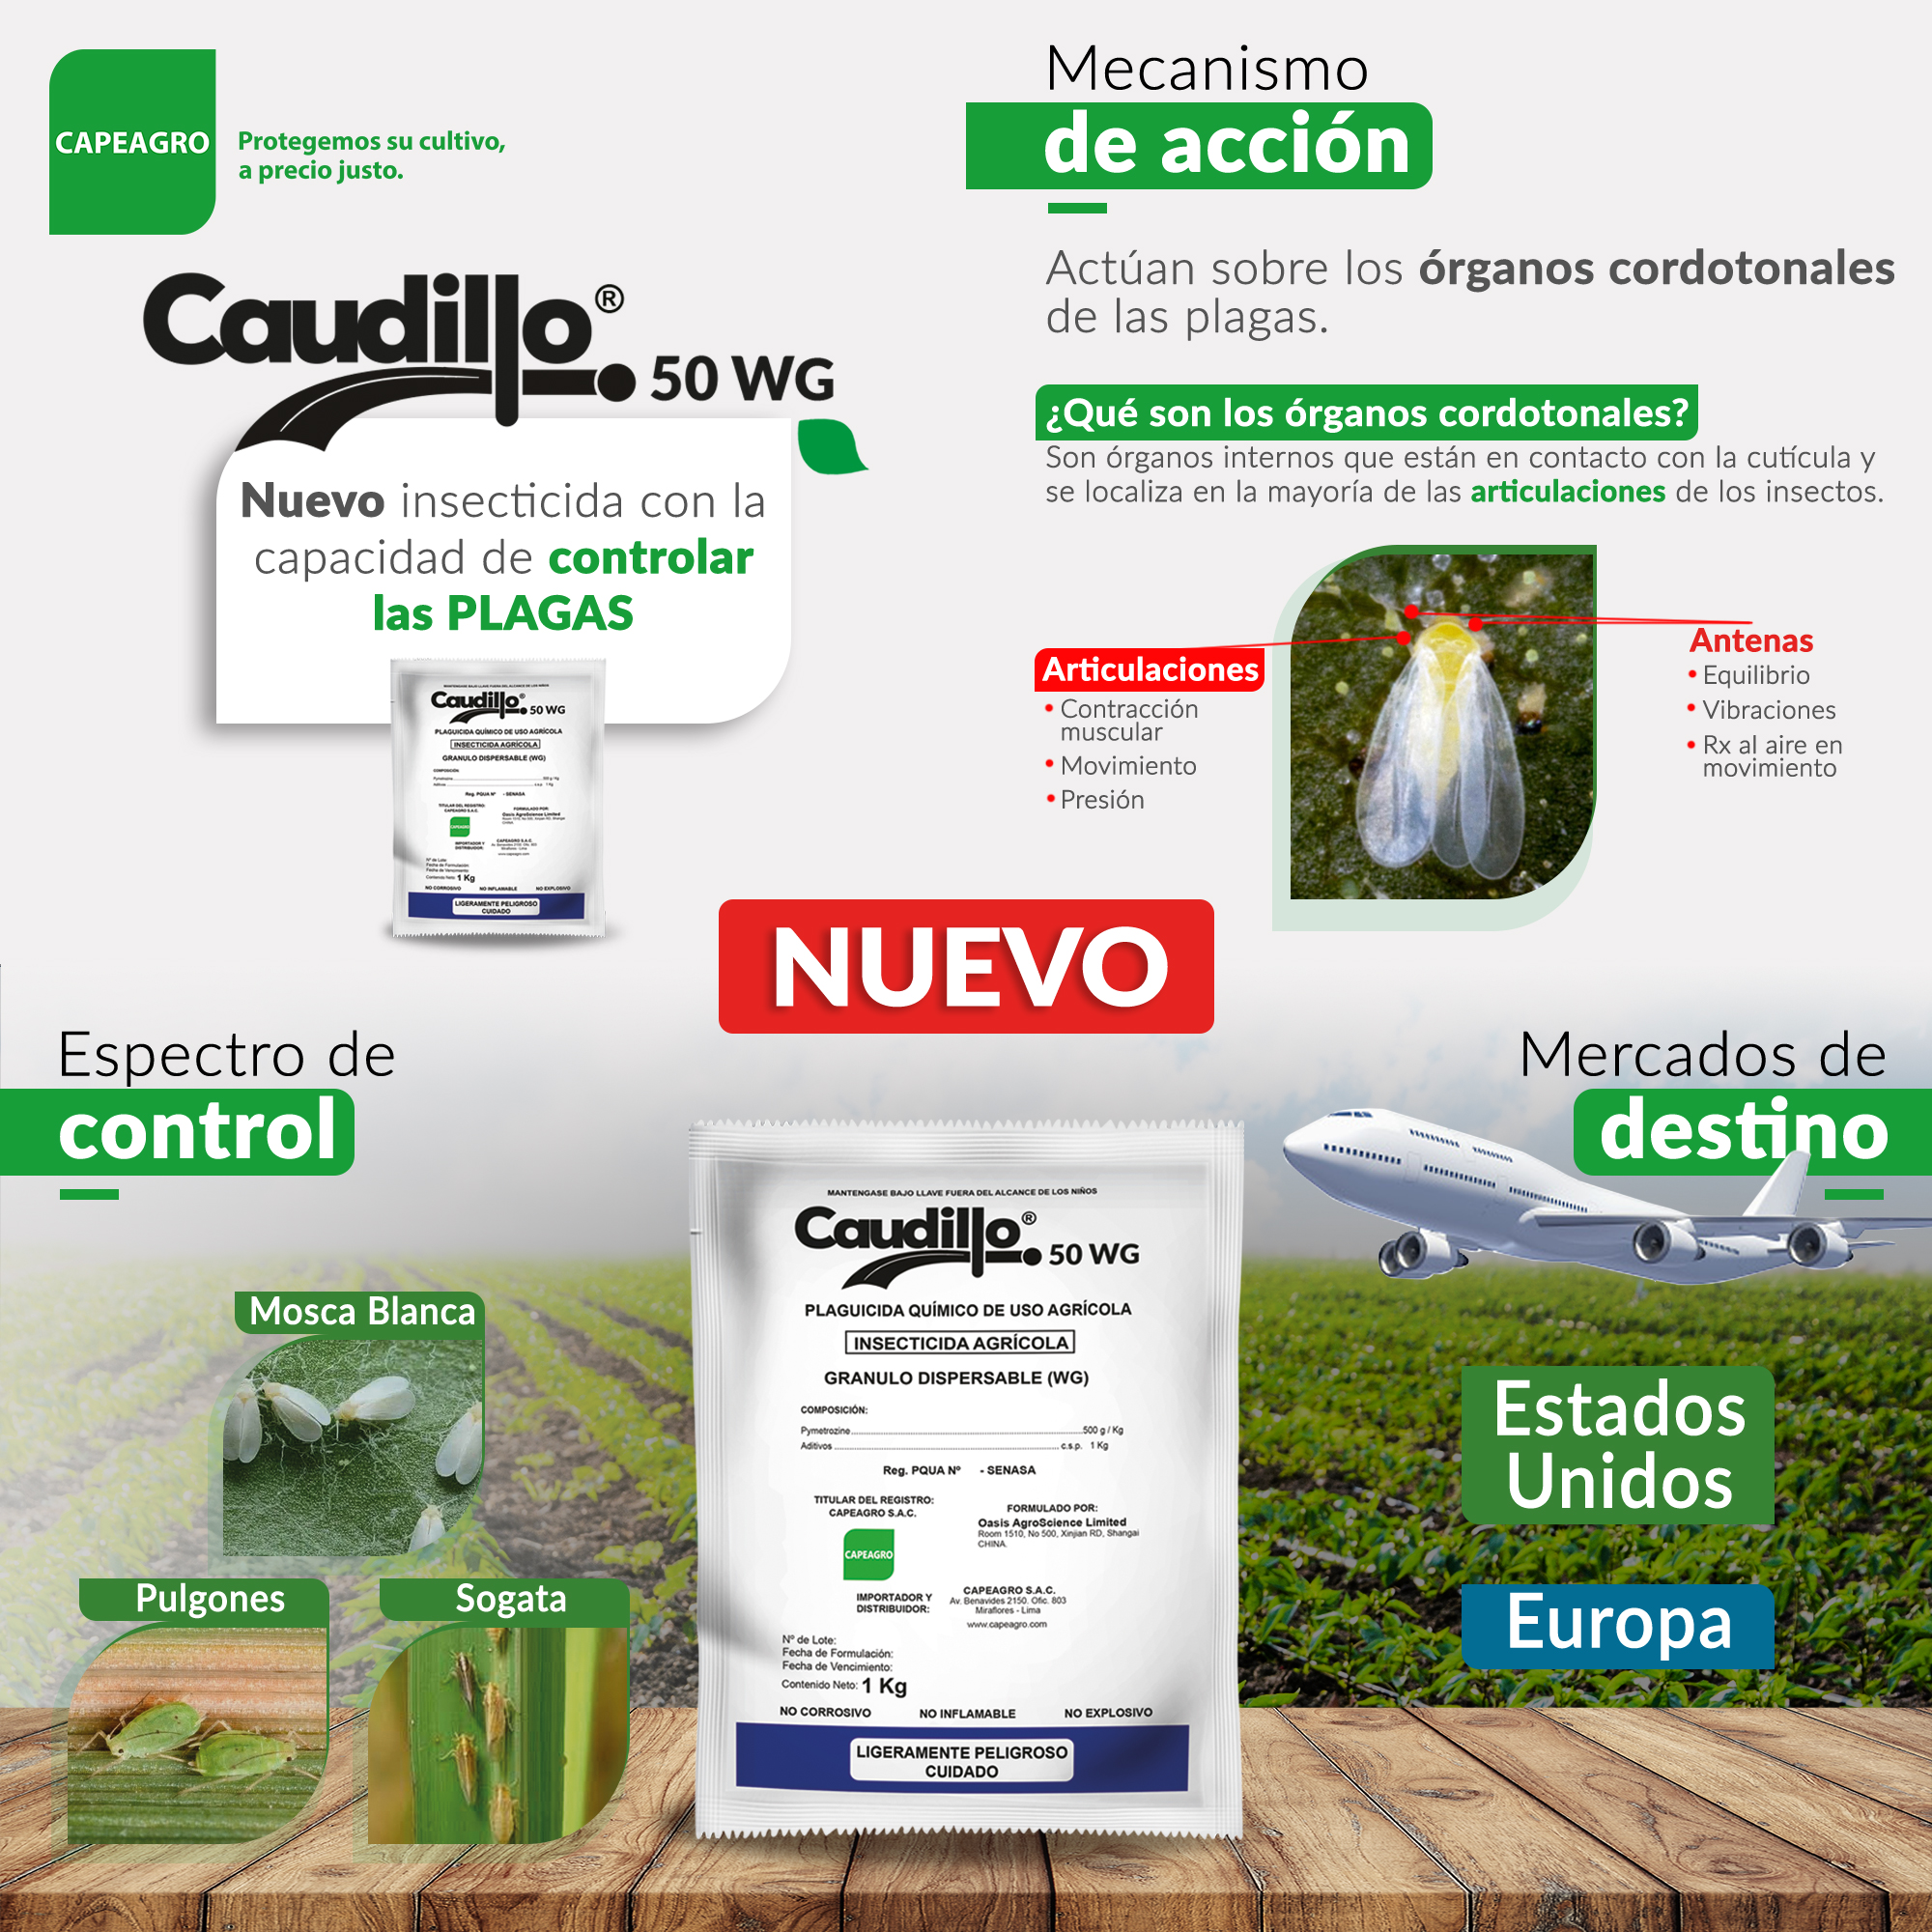 CAUDILLO 50 WC: nuevo insecticida que detiene rápidamente la alimentación de insectos picadores chupadores